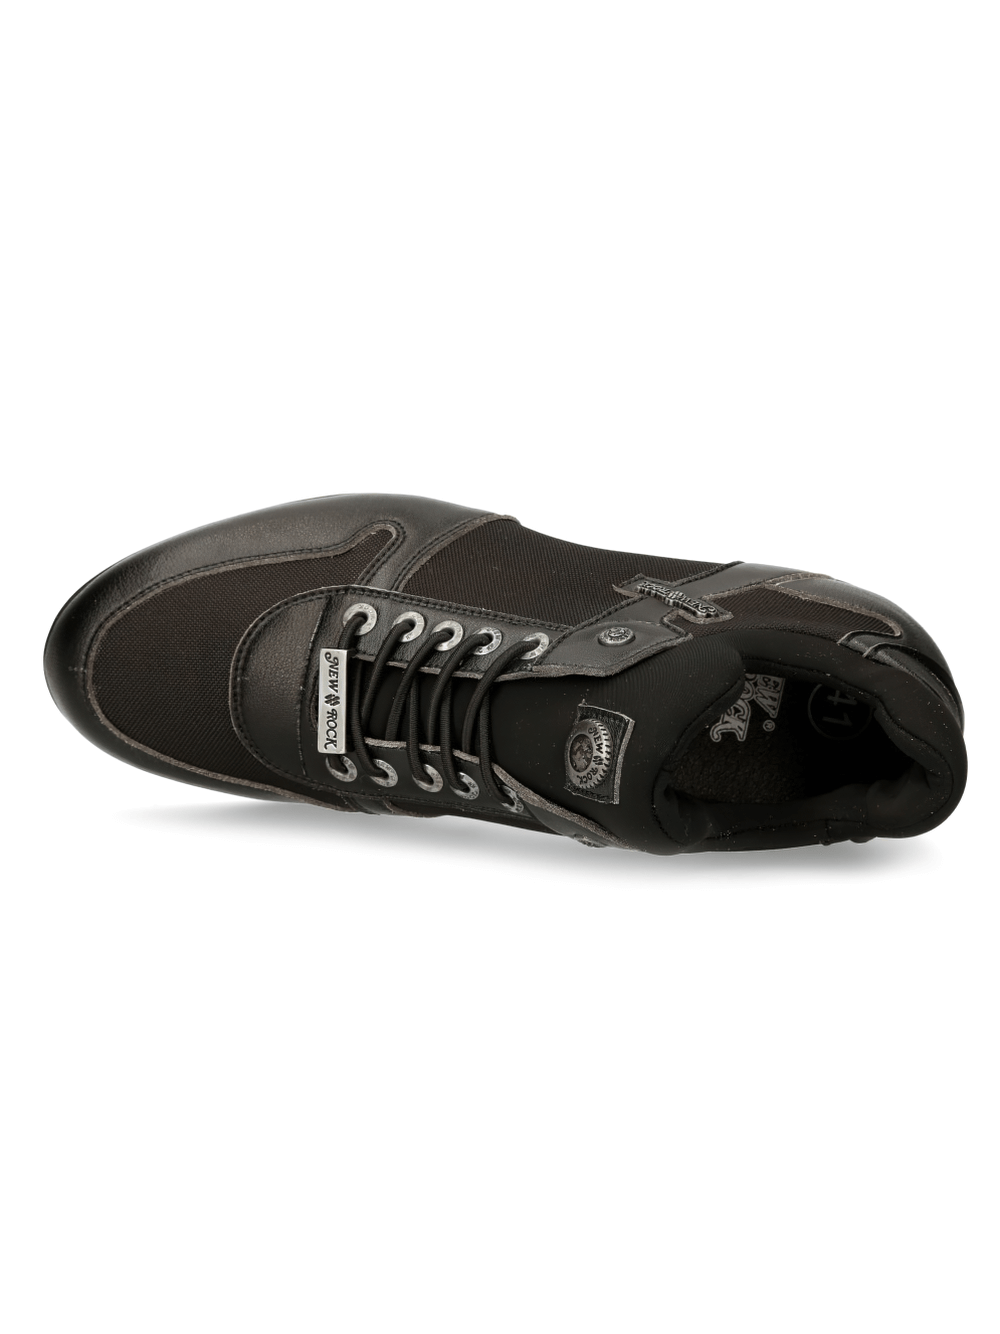 NEW ROCK Zapatillas híbridas negras urbanas de moda con cordones